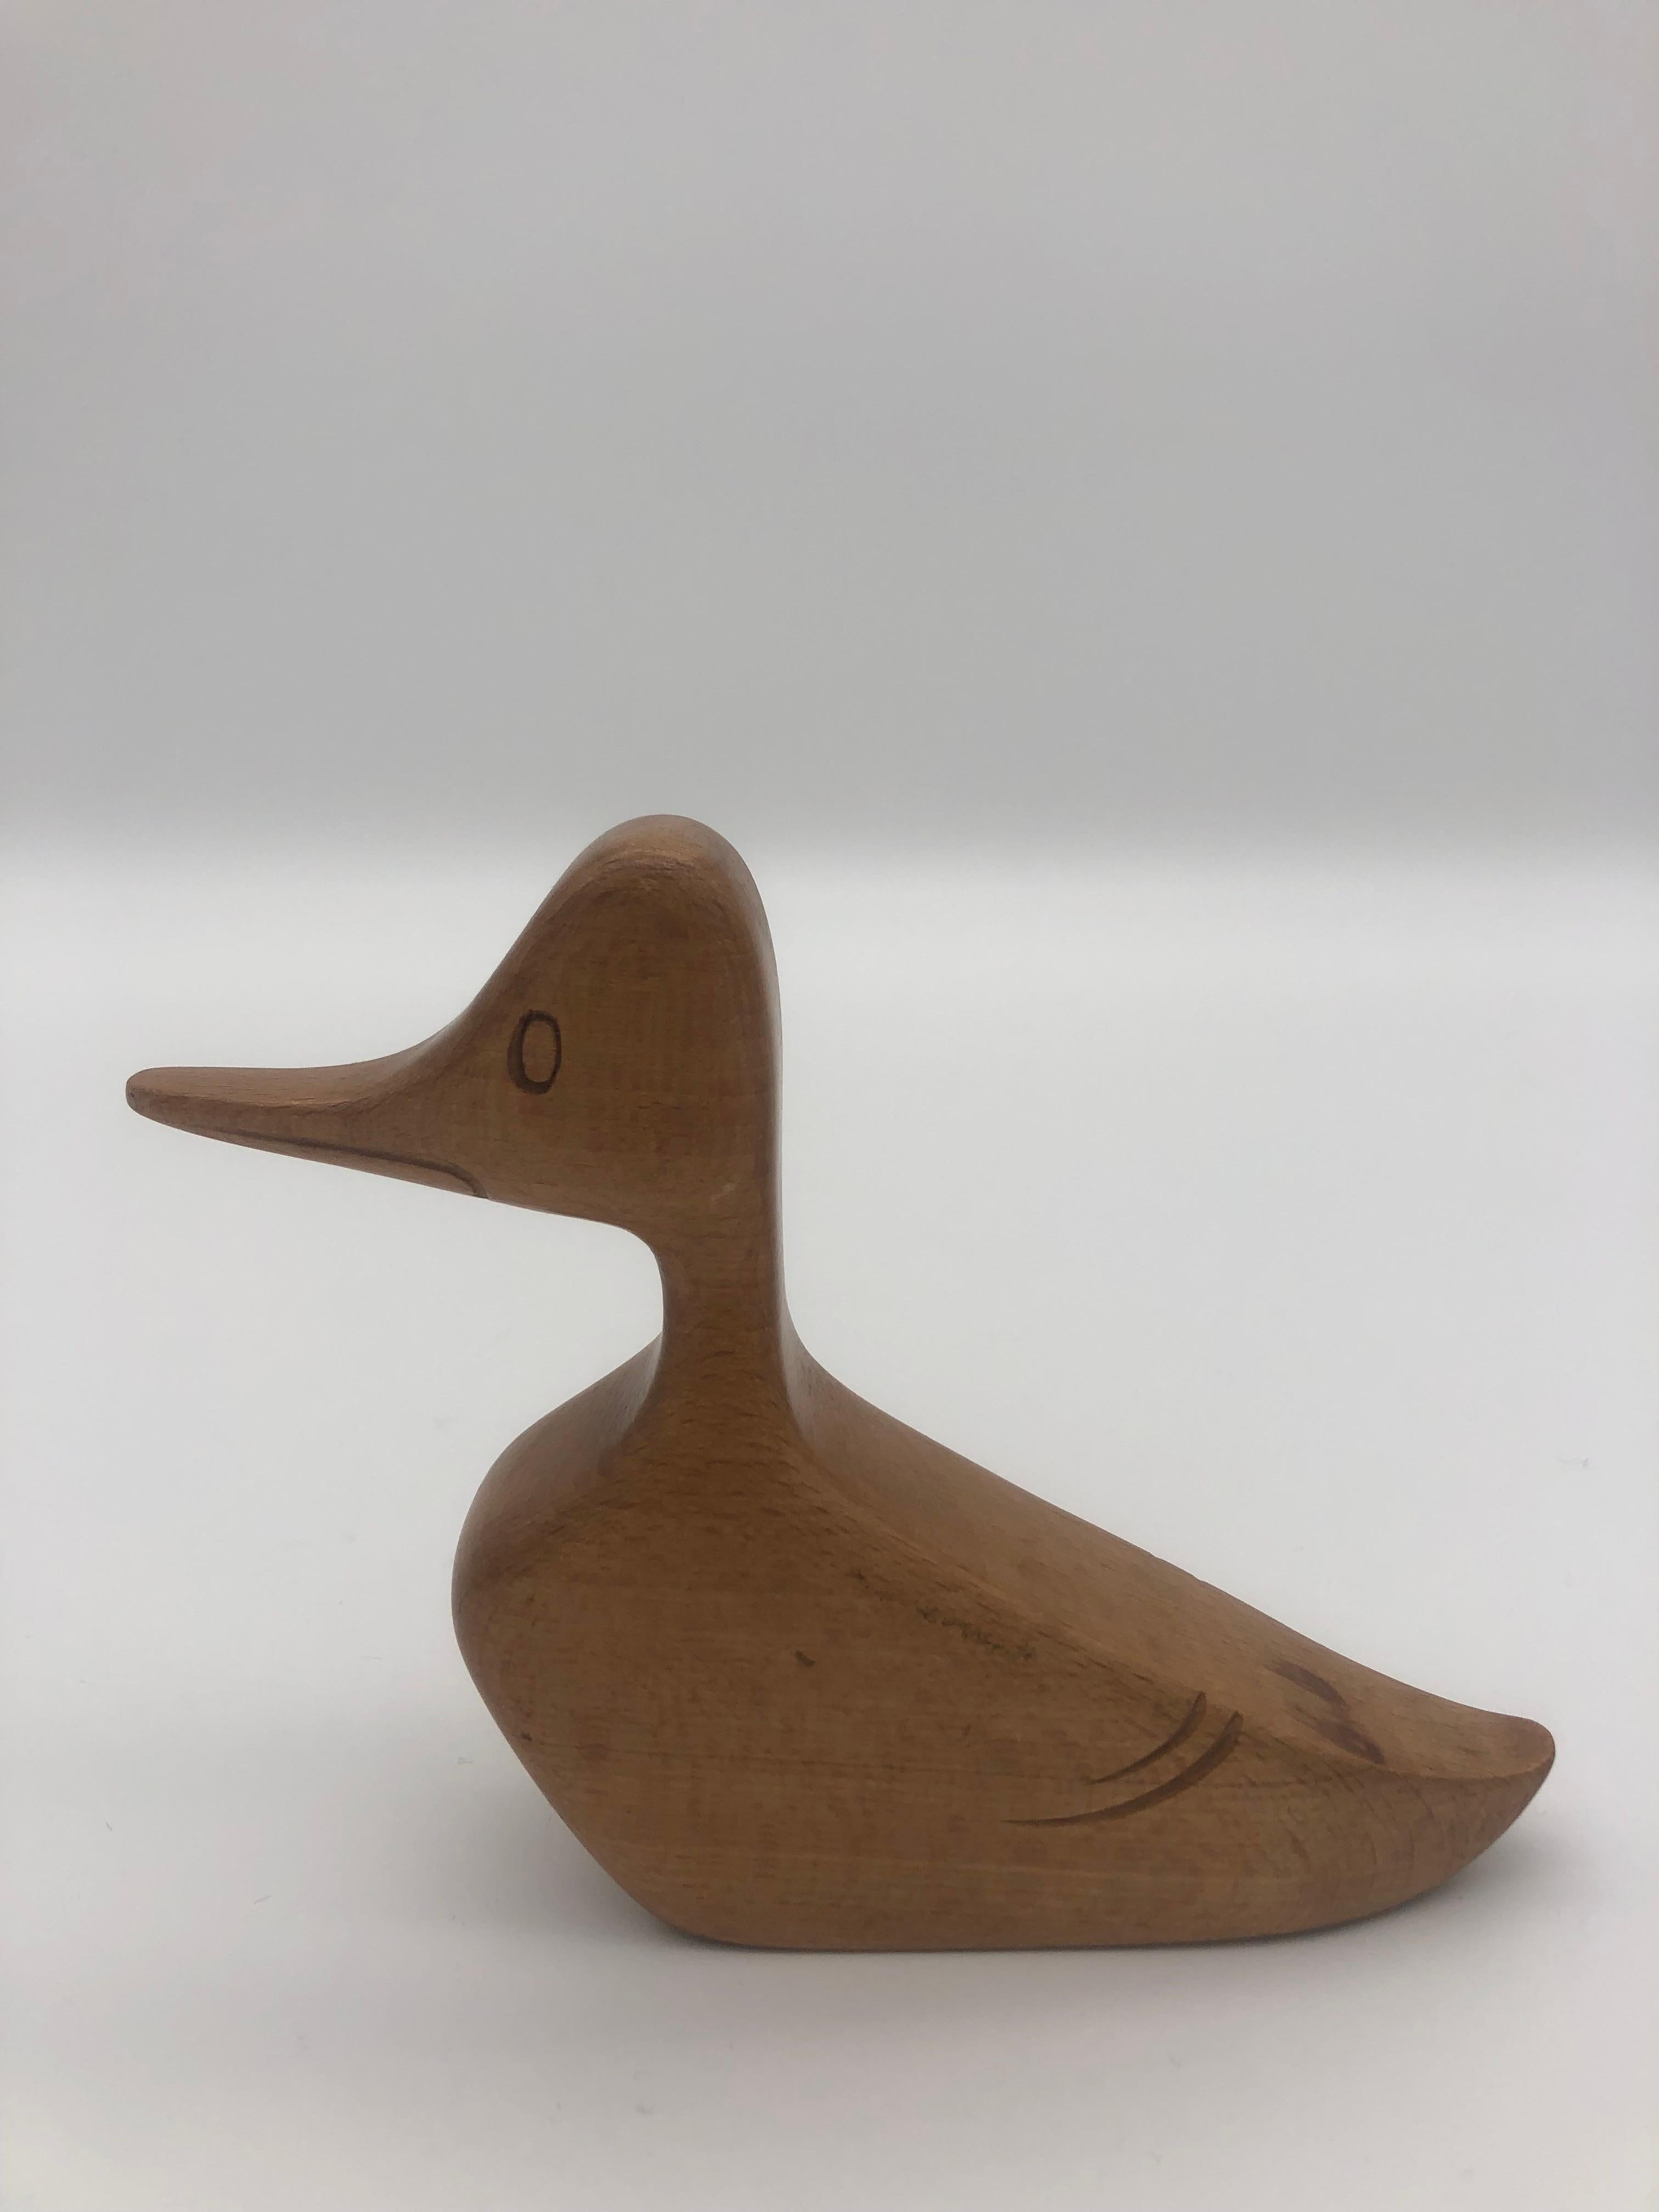 Mid-20th Century Wooden Duck by Franz Hagenauer, Vienna, Austria For Sale